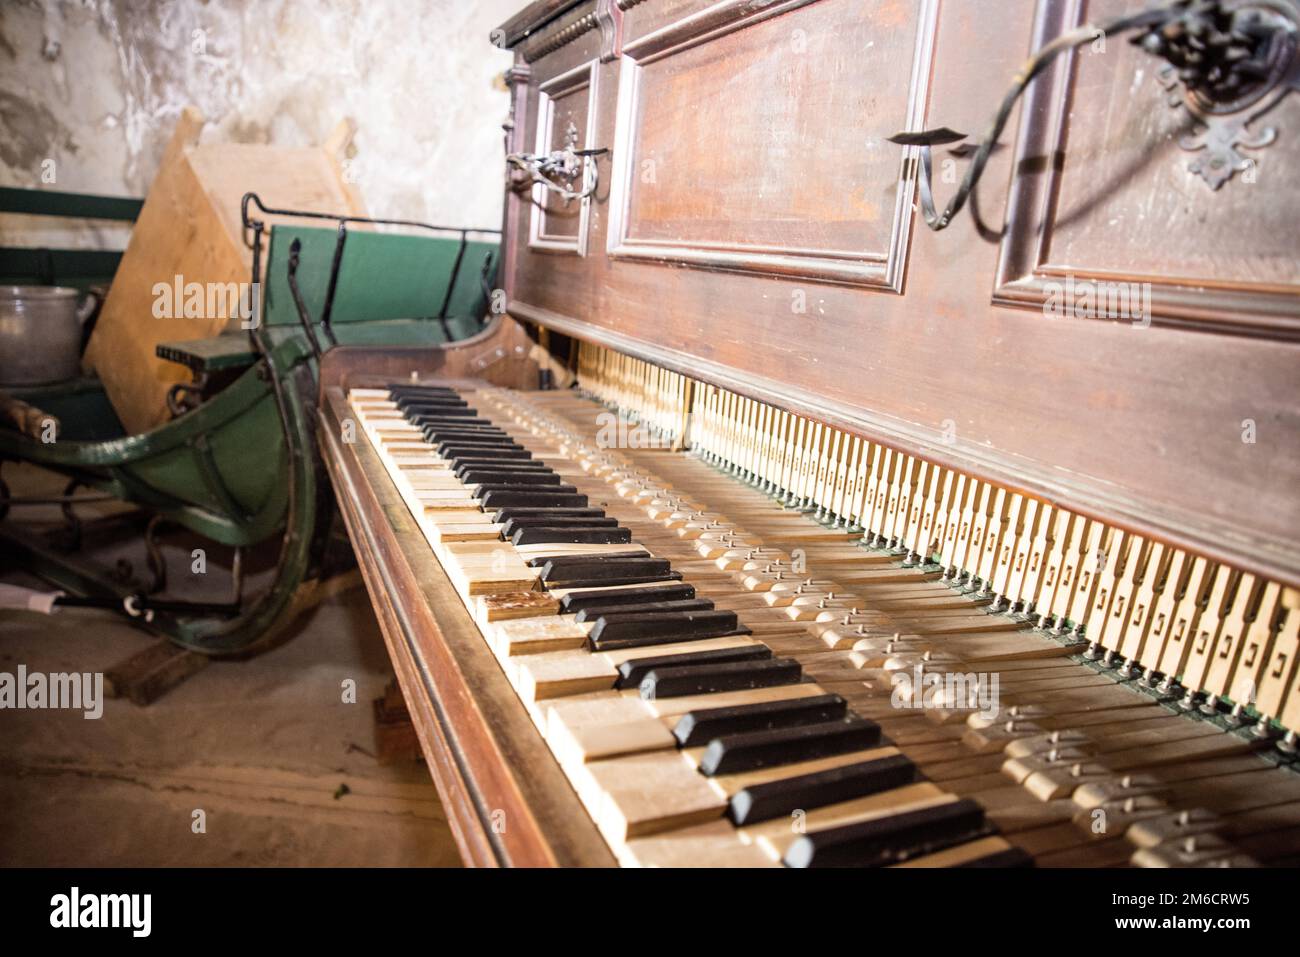 Vieux piano cassé en bois. Résumé à l'intérieur de la photo rétro Banque D'Images